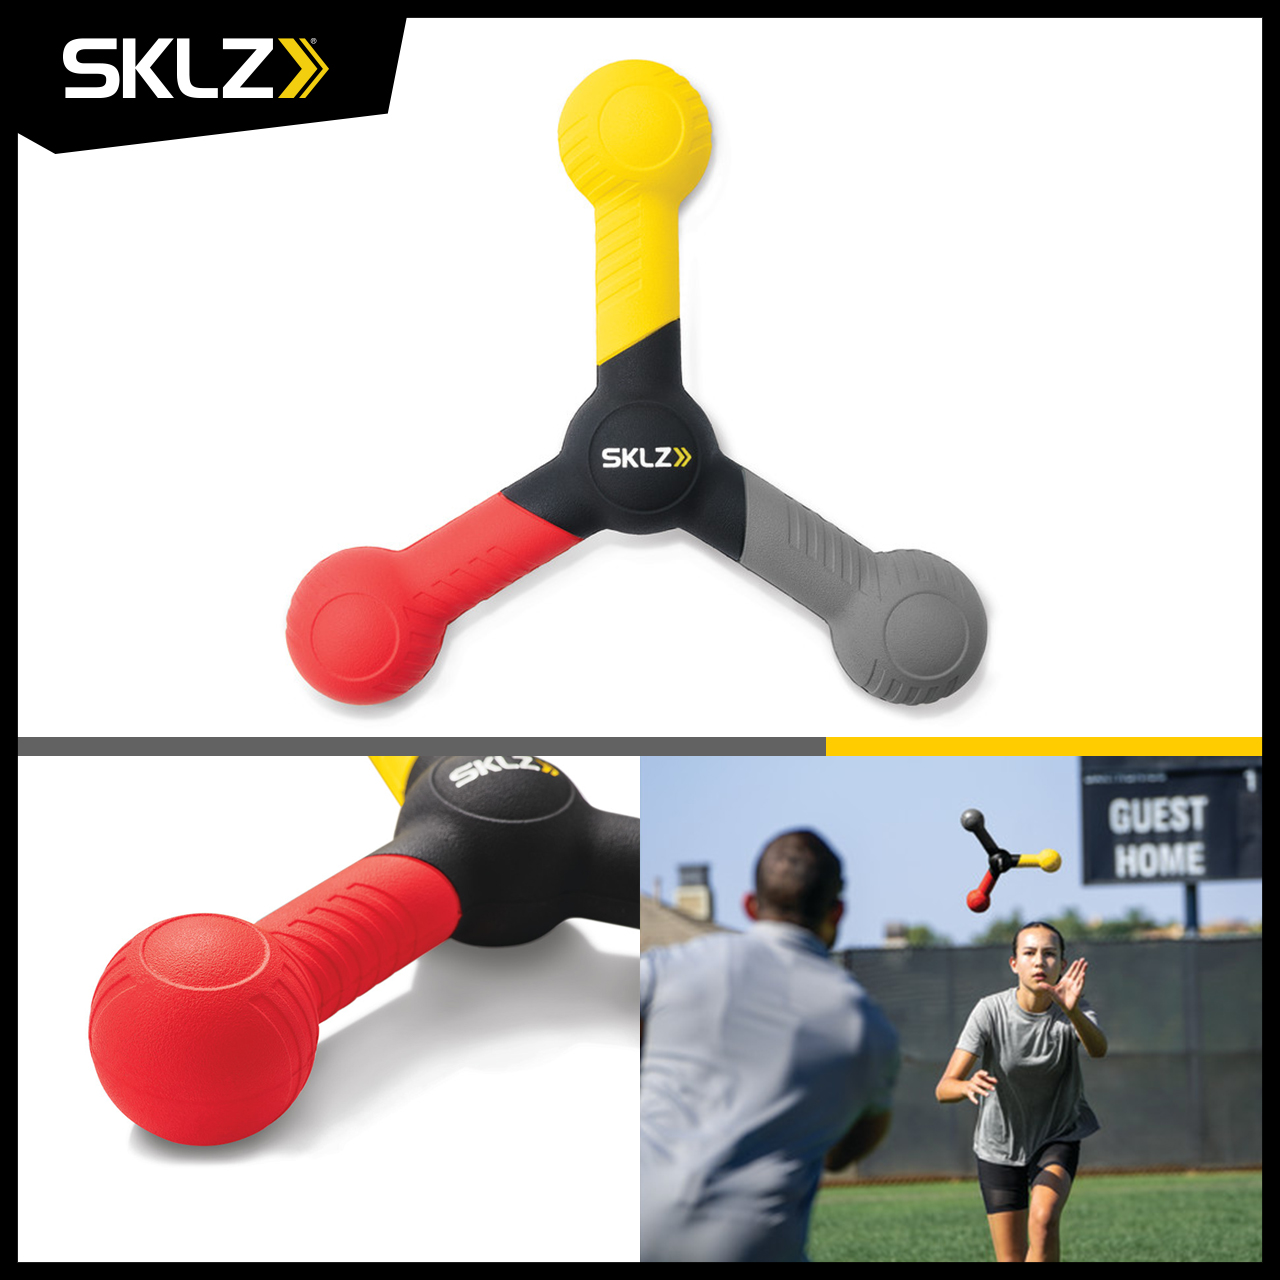 SKLZ - Reactive Catch ด้ามสีฝึกทักษะการตอบสนองสายตาและสมองในการตัดสินใจของผู้เล่นให้เร็วขึ้น มีแอพฝึกอบรม